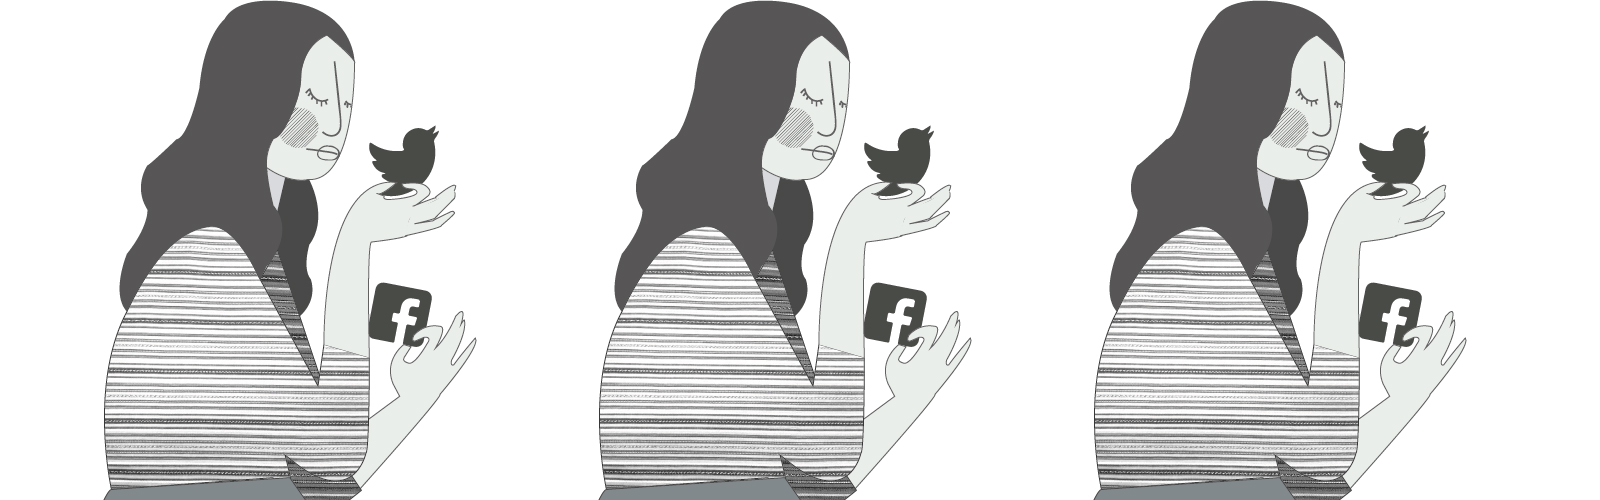 Ser mujer, indígena y alzar la voz en las redes sociales